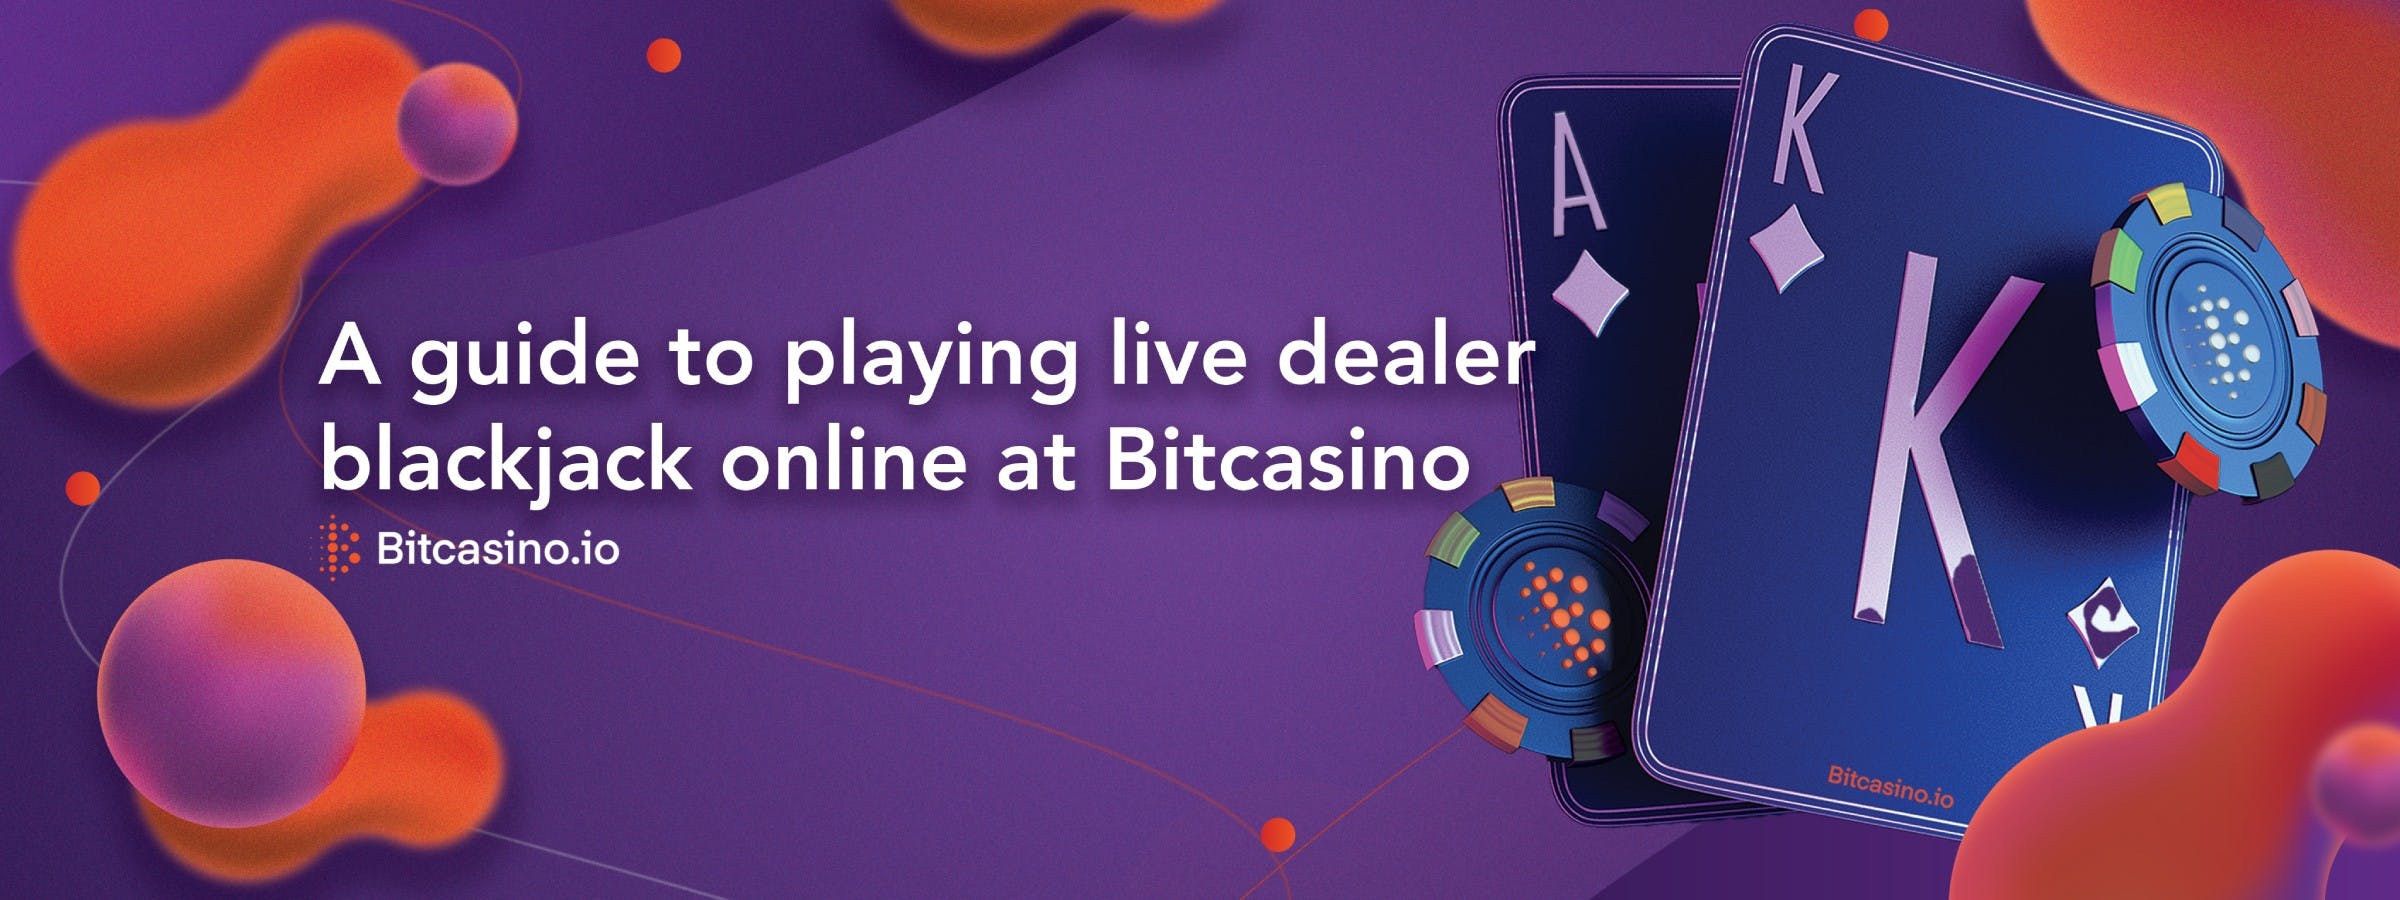 Una guía para jugar al blackjack con crupier en vivo en línea en Bitcasino